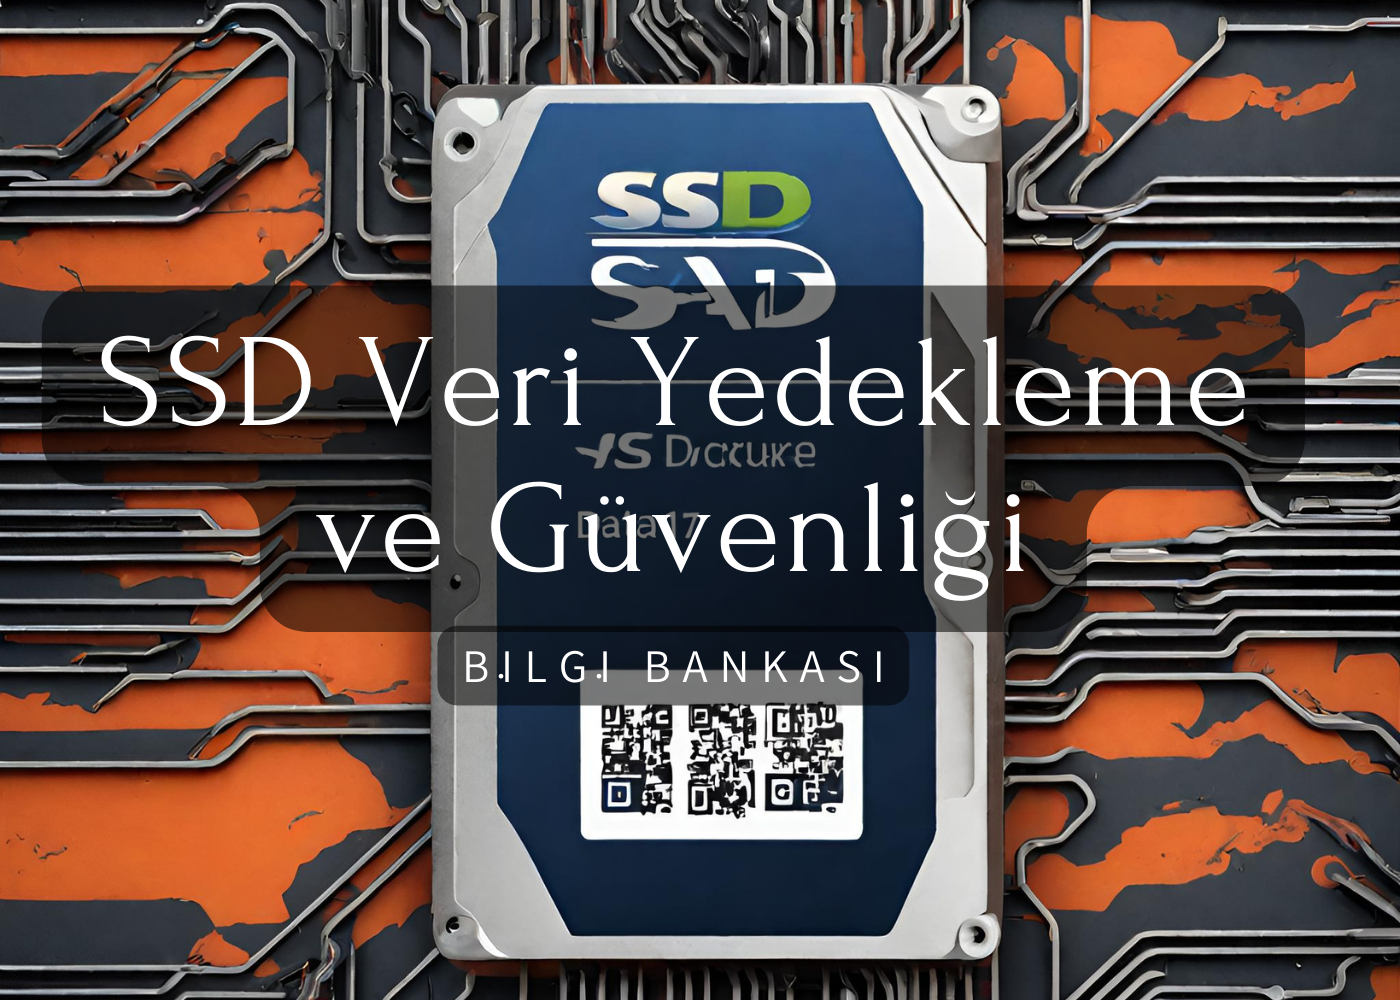 SSD Veri Yedekleme ve Güvenliği